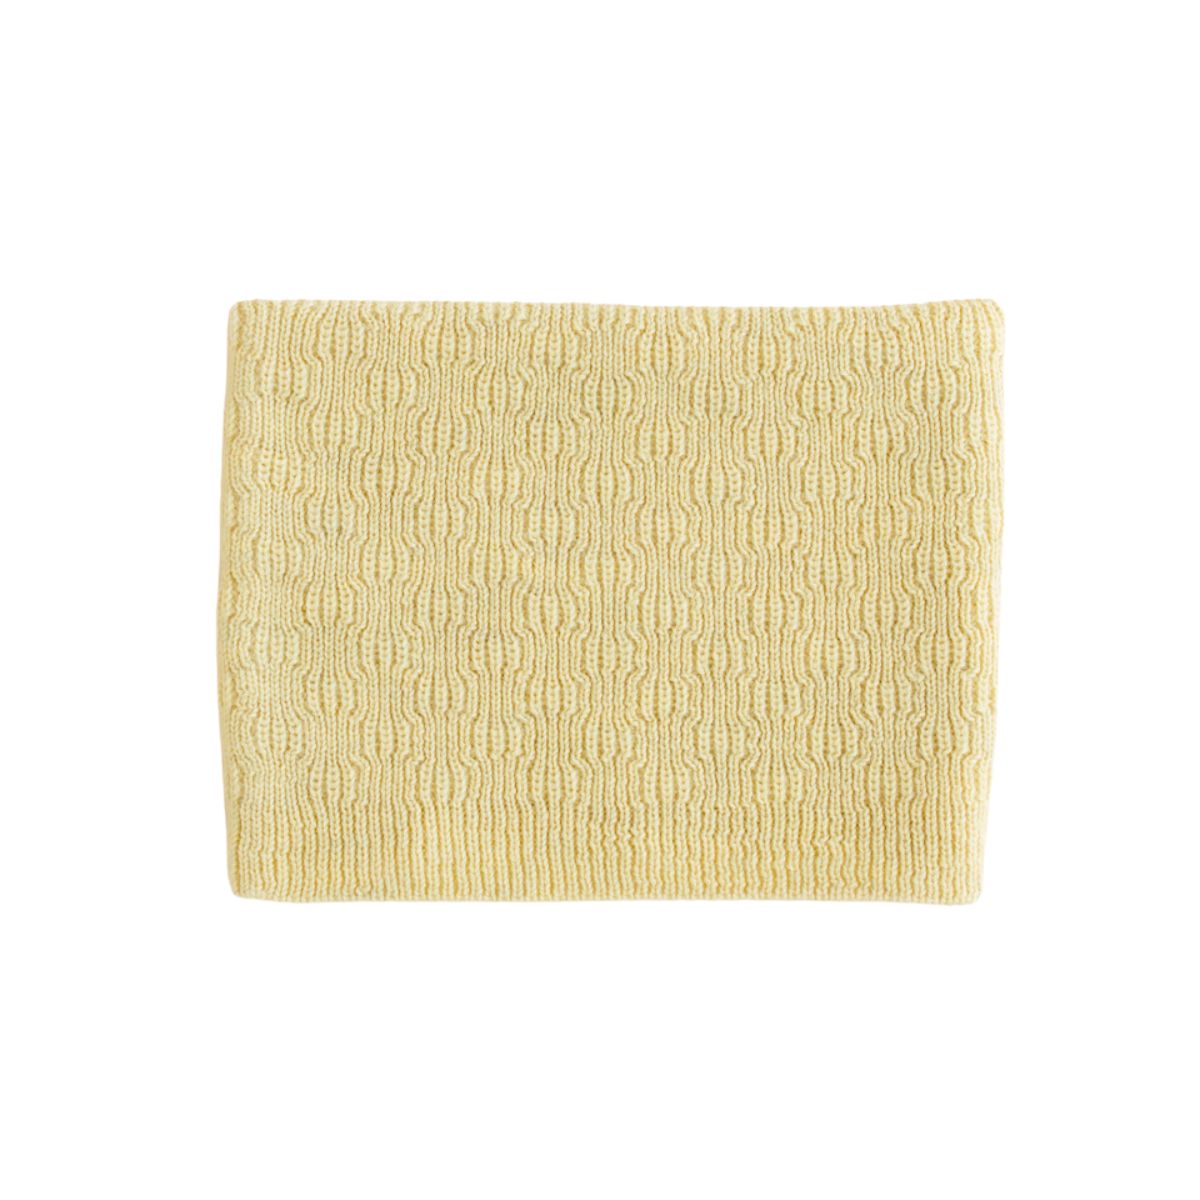 Lekker warm & stijlvol: de colsjaal gigi in de kleur light yellow van Hvid. Een prachtig gebreide colsjaal, gemaakt van zachte merinowol. Comfortabel en hip! In verschillende kleuren. Combineer met bijpassende muts. VanZus